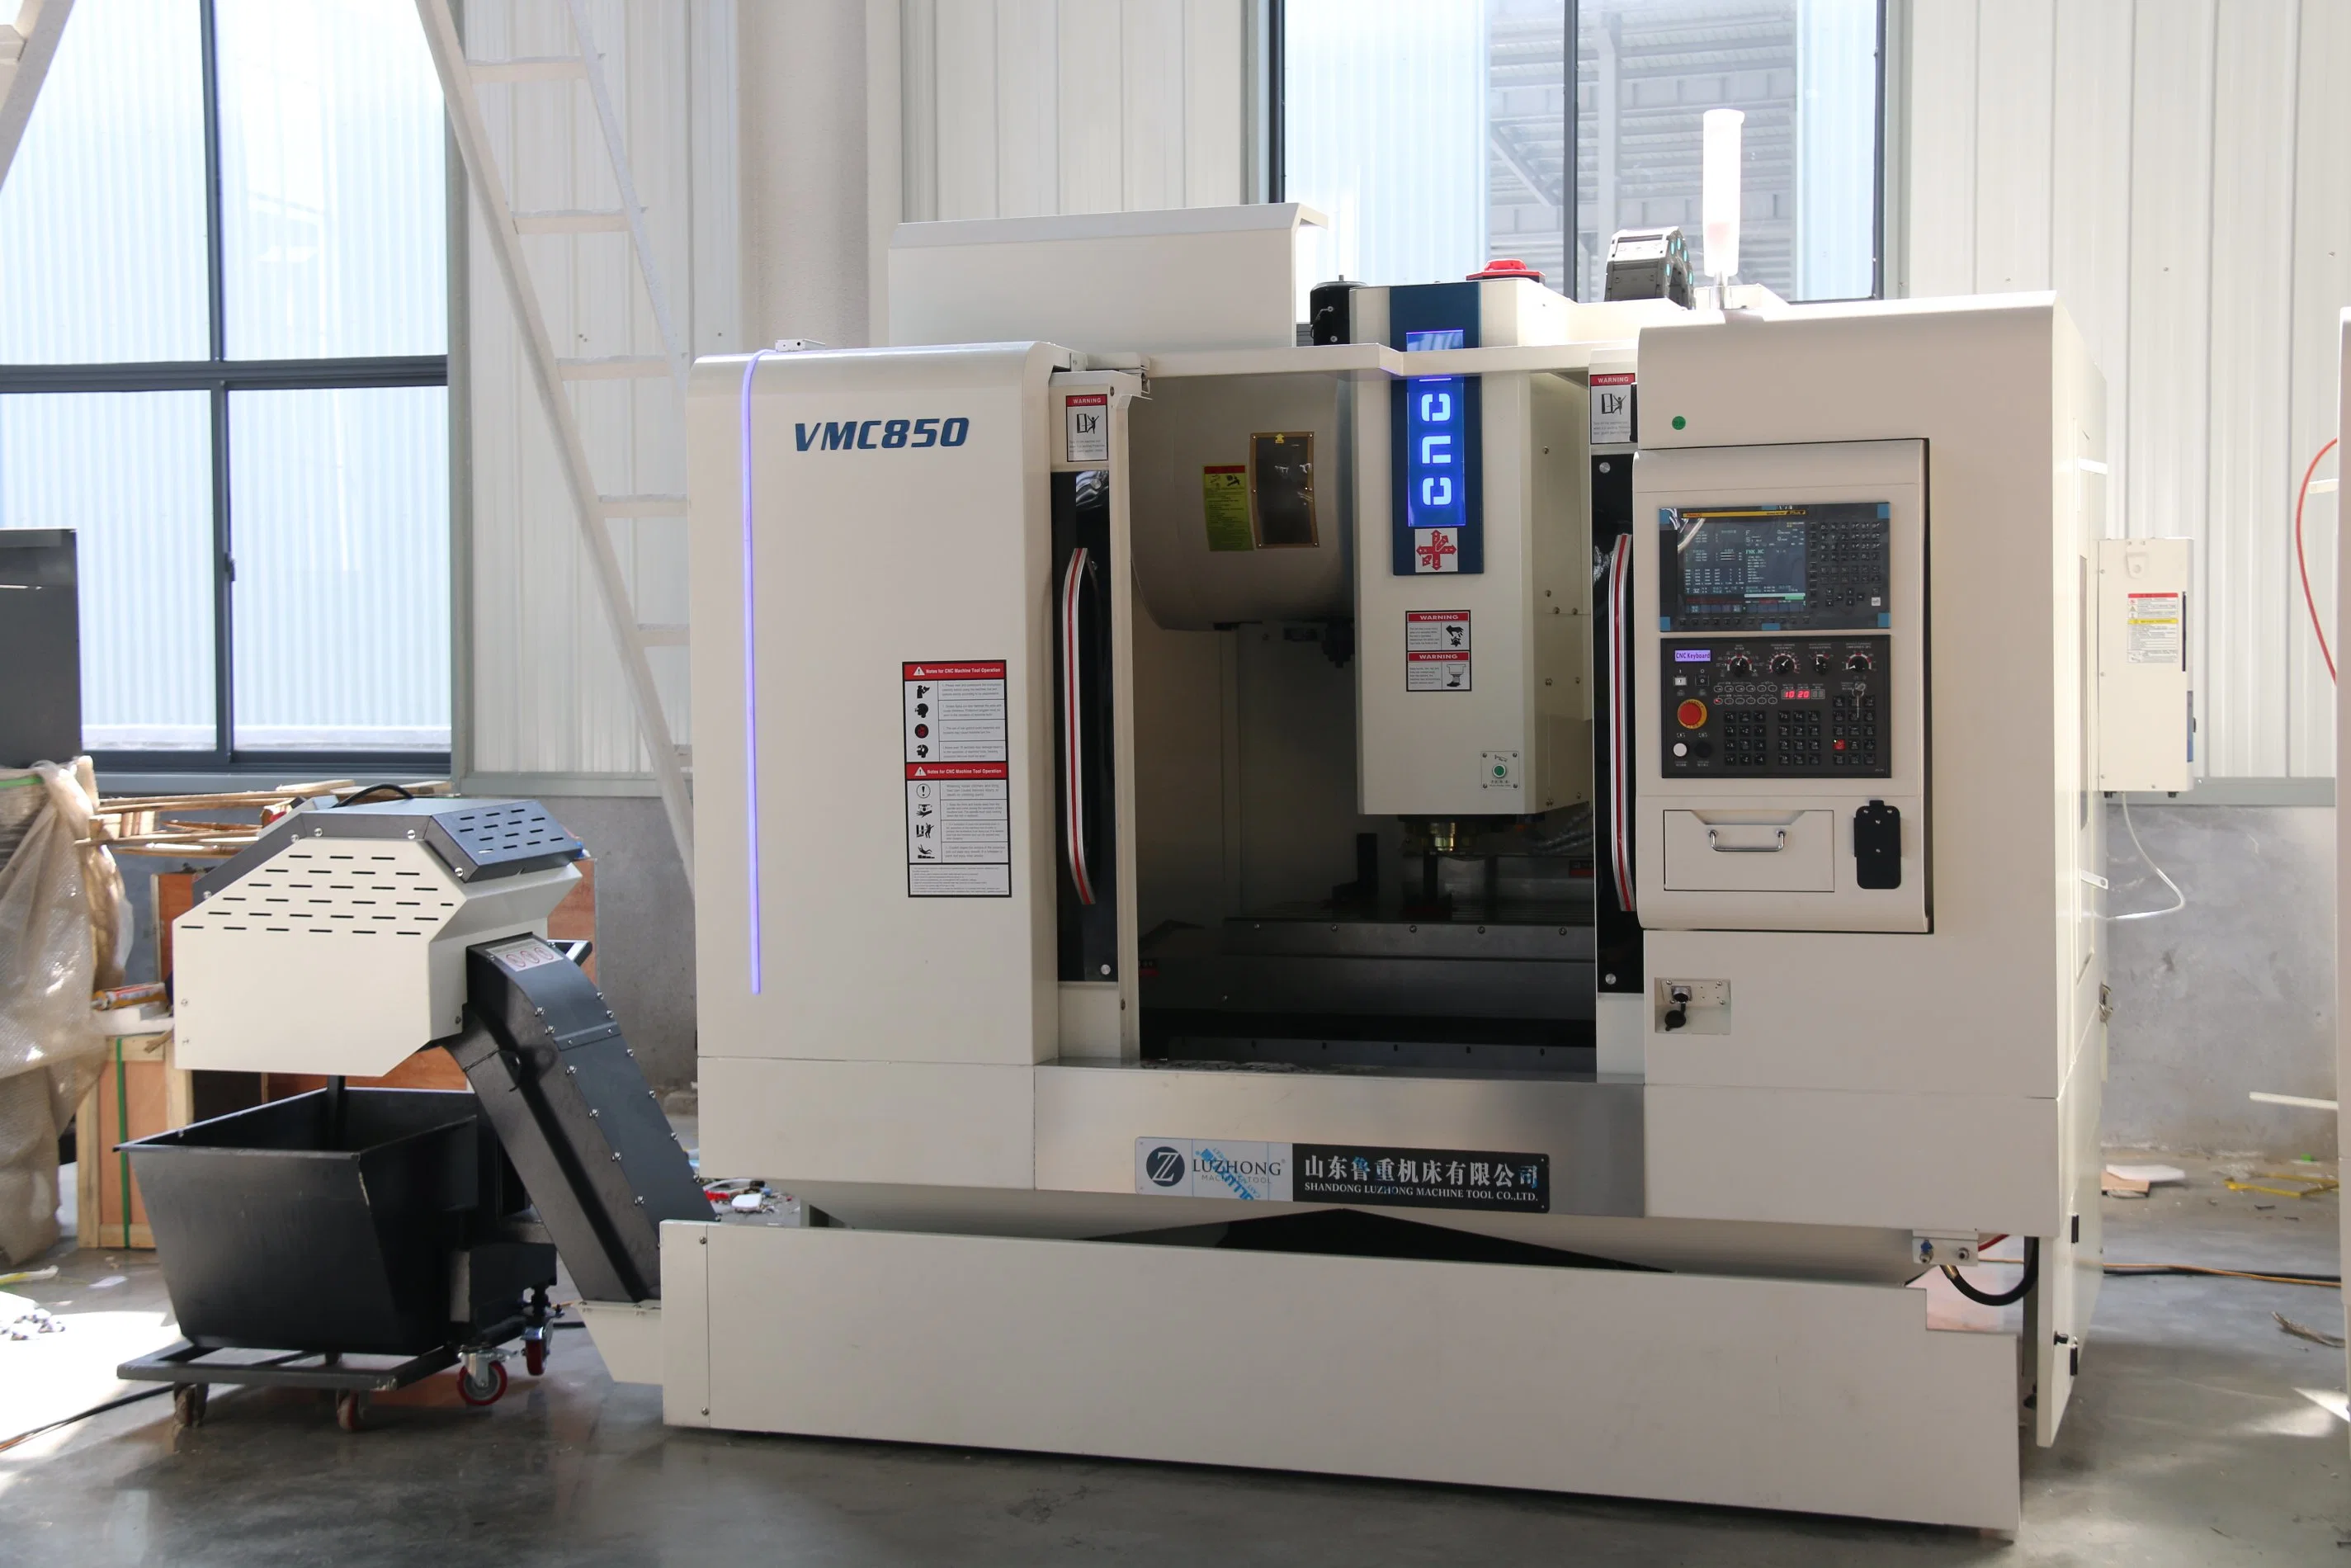 VMC850 hohe Qualität Präzision Automatische CNC-Maschine Zentrum CNC Vertikal Preis Für Fräsmaschine